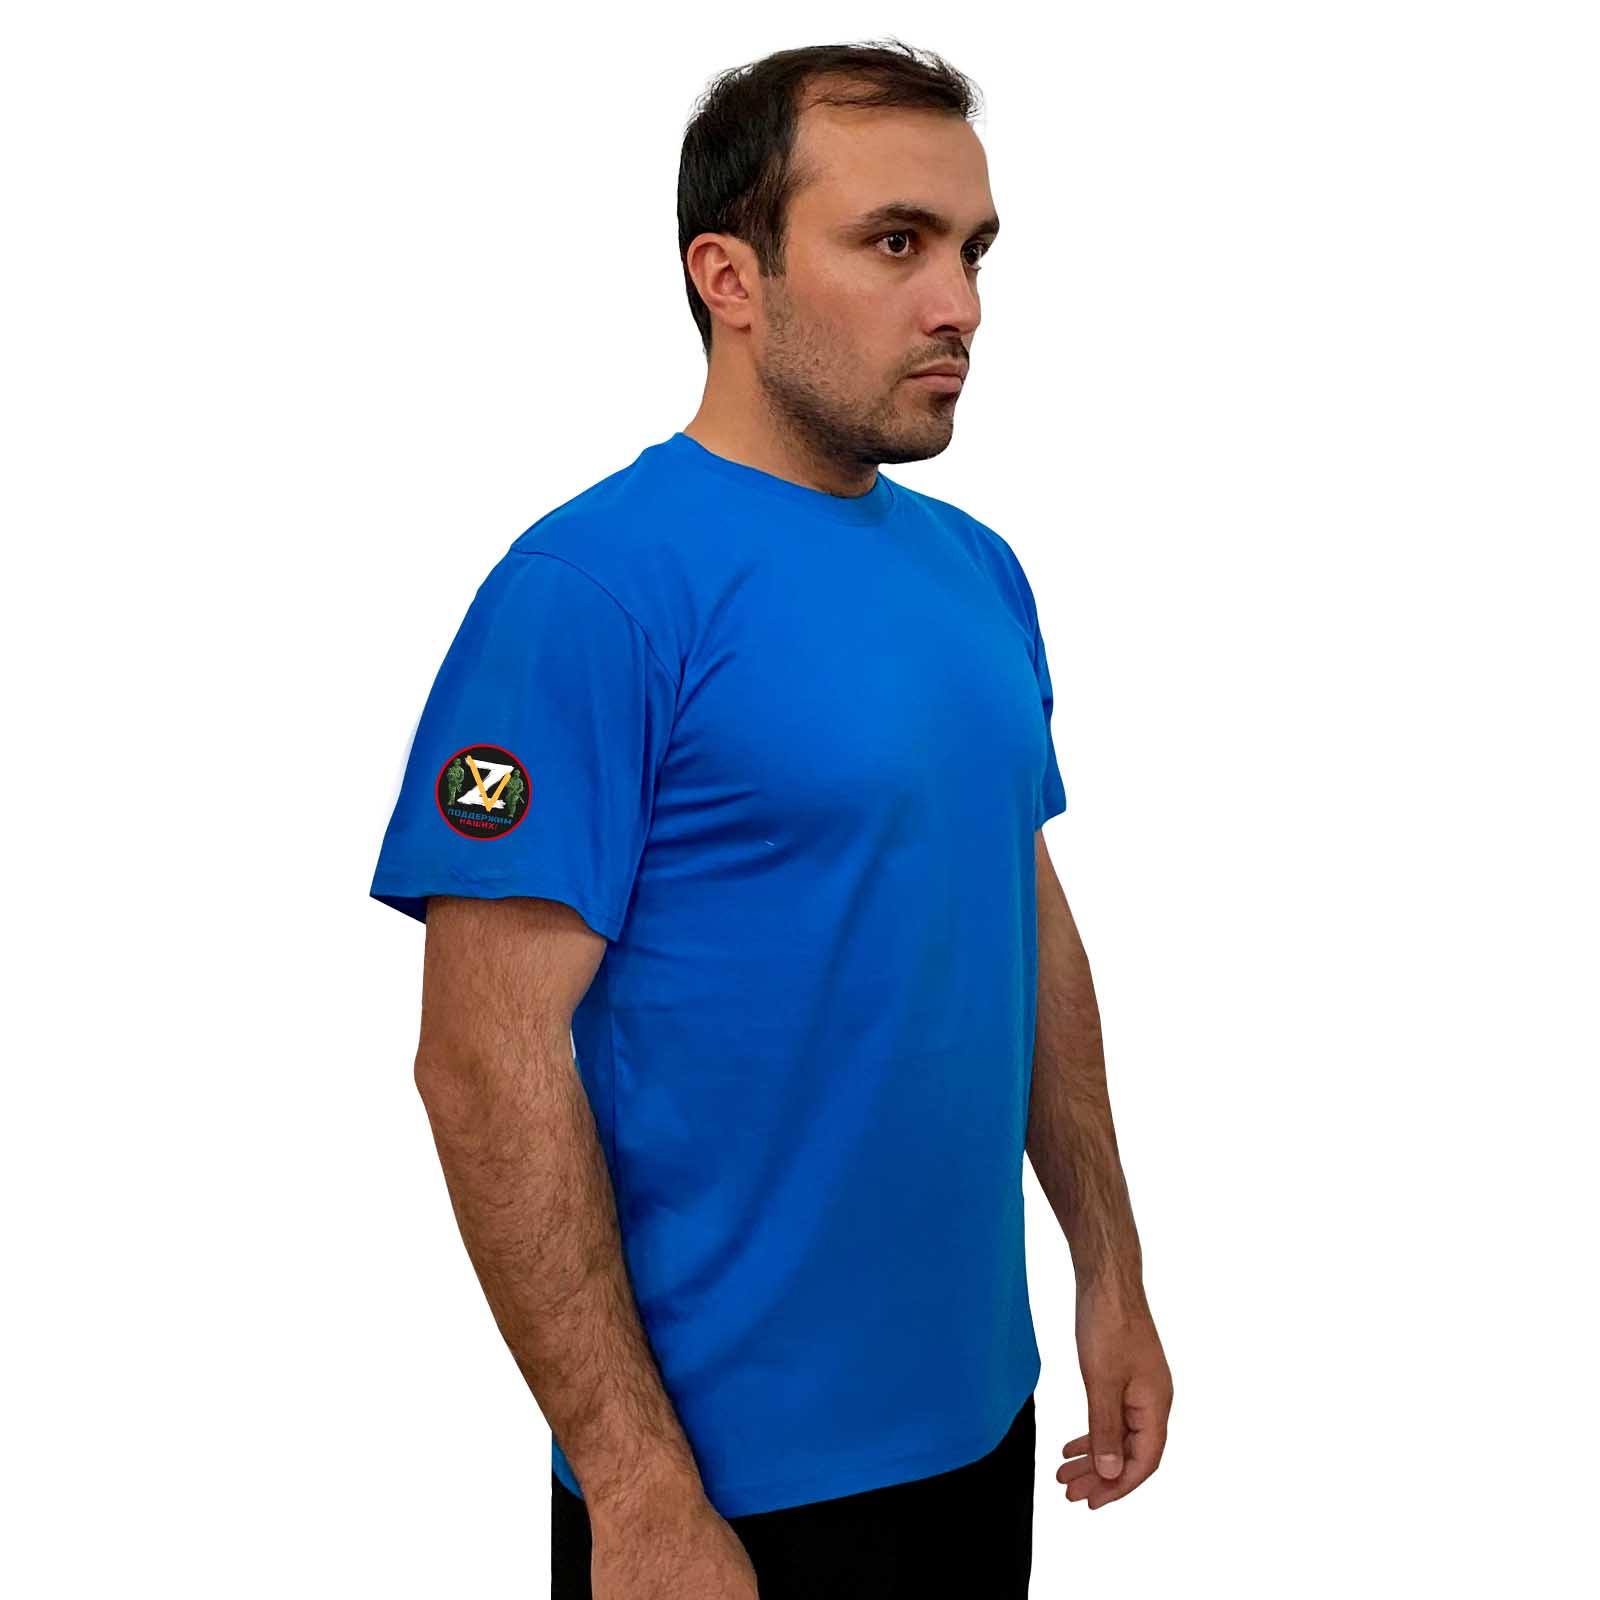 Купить голубую оригинальную футболку Z V онлайн выгодно